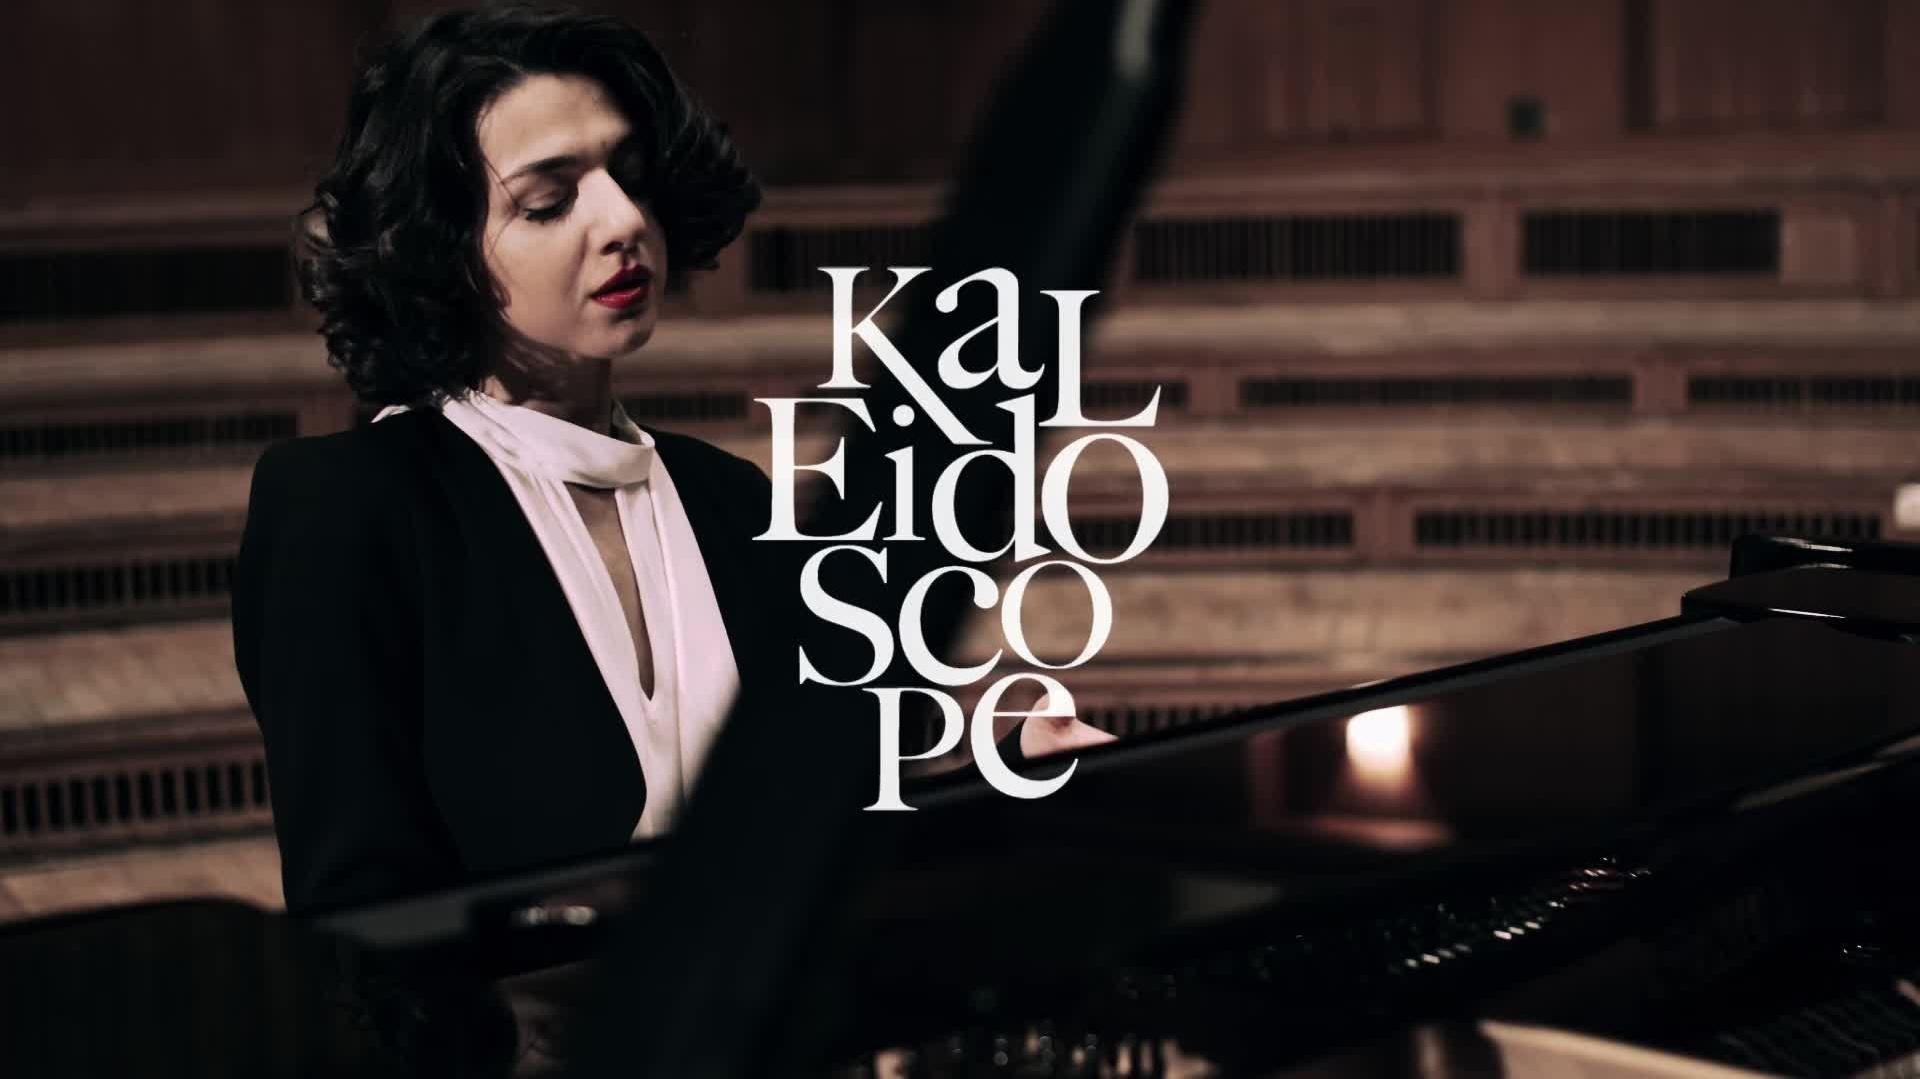 Khatia Buniatishvili - Kaleidoscope Trailer